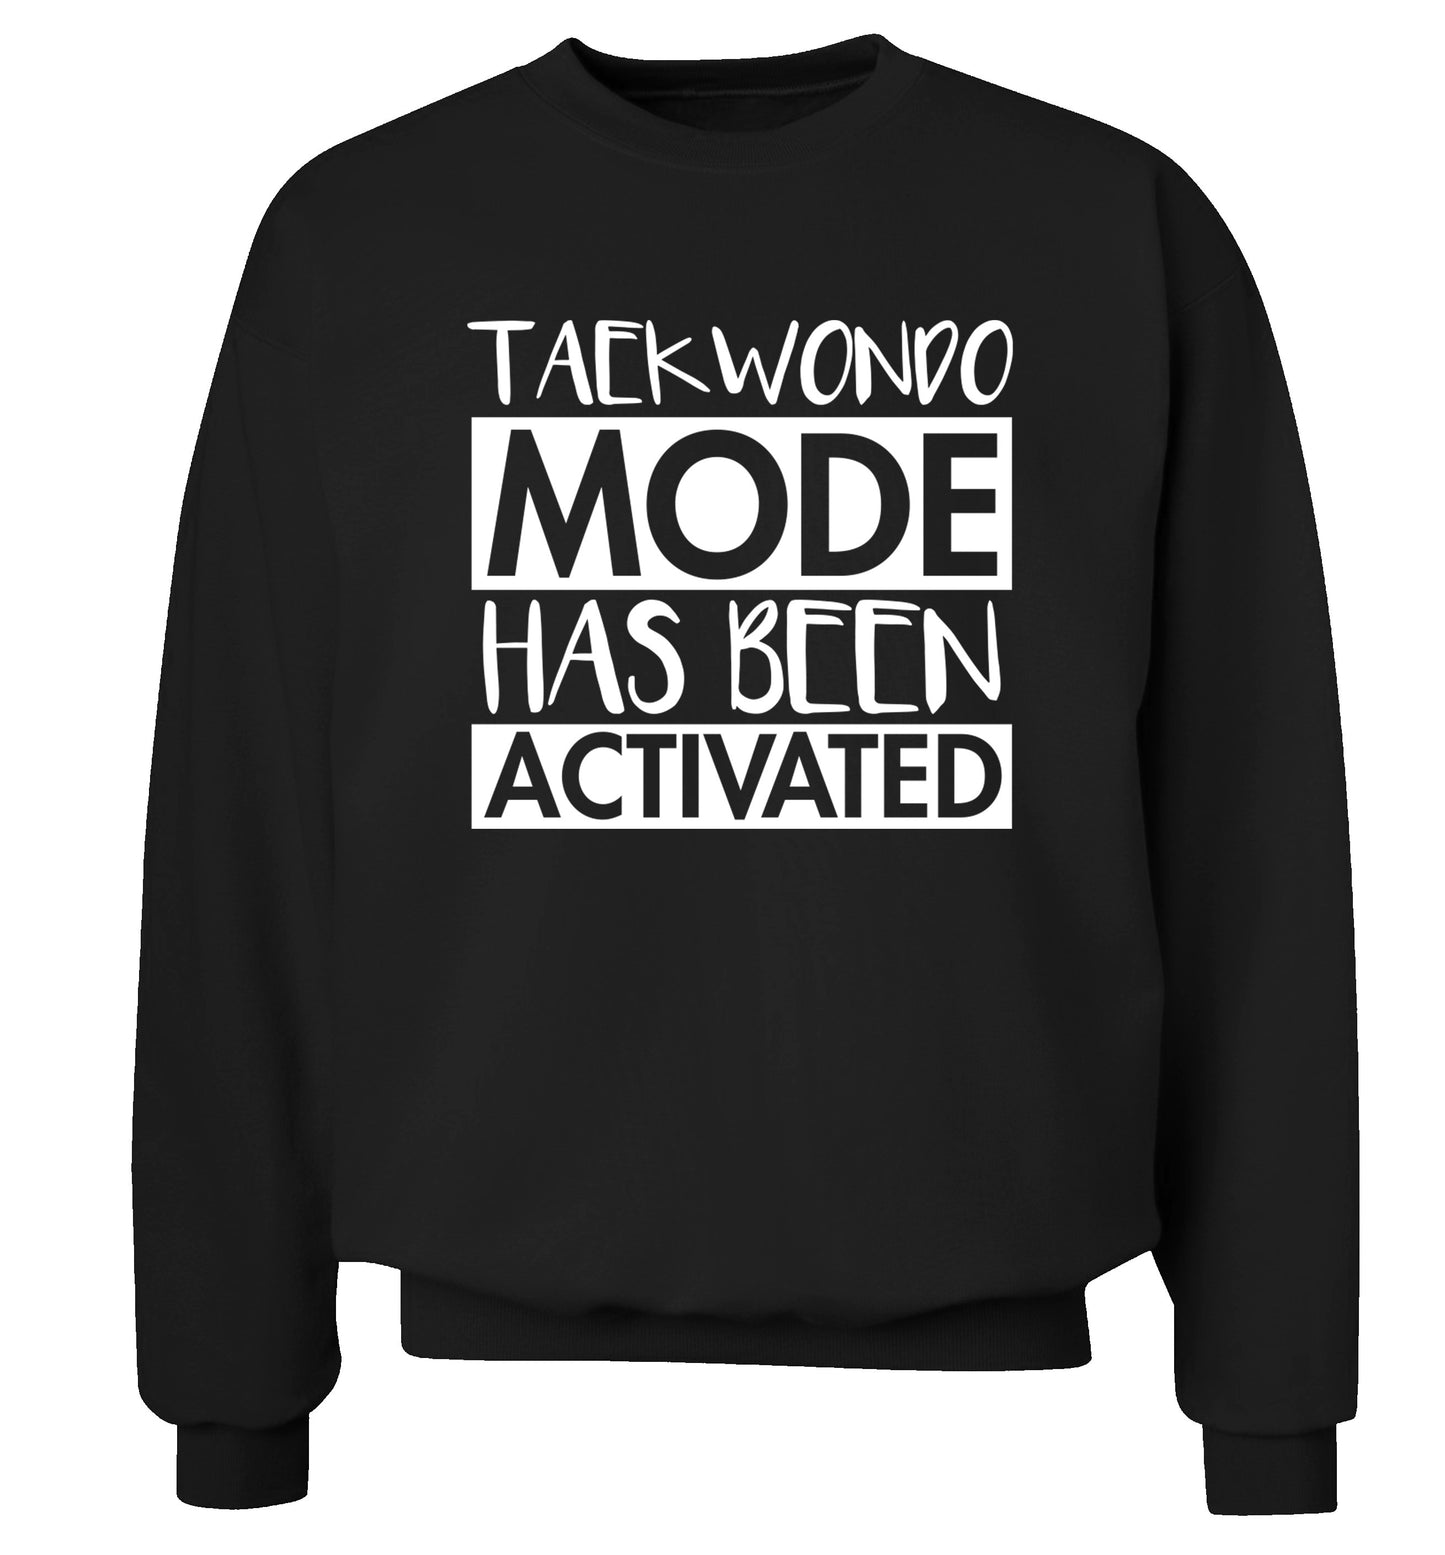 Taekwondo mode activated Adult's unisex black Sweater 2XL